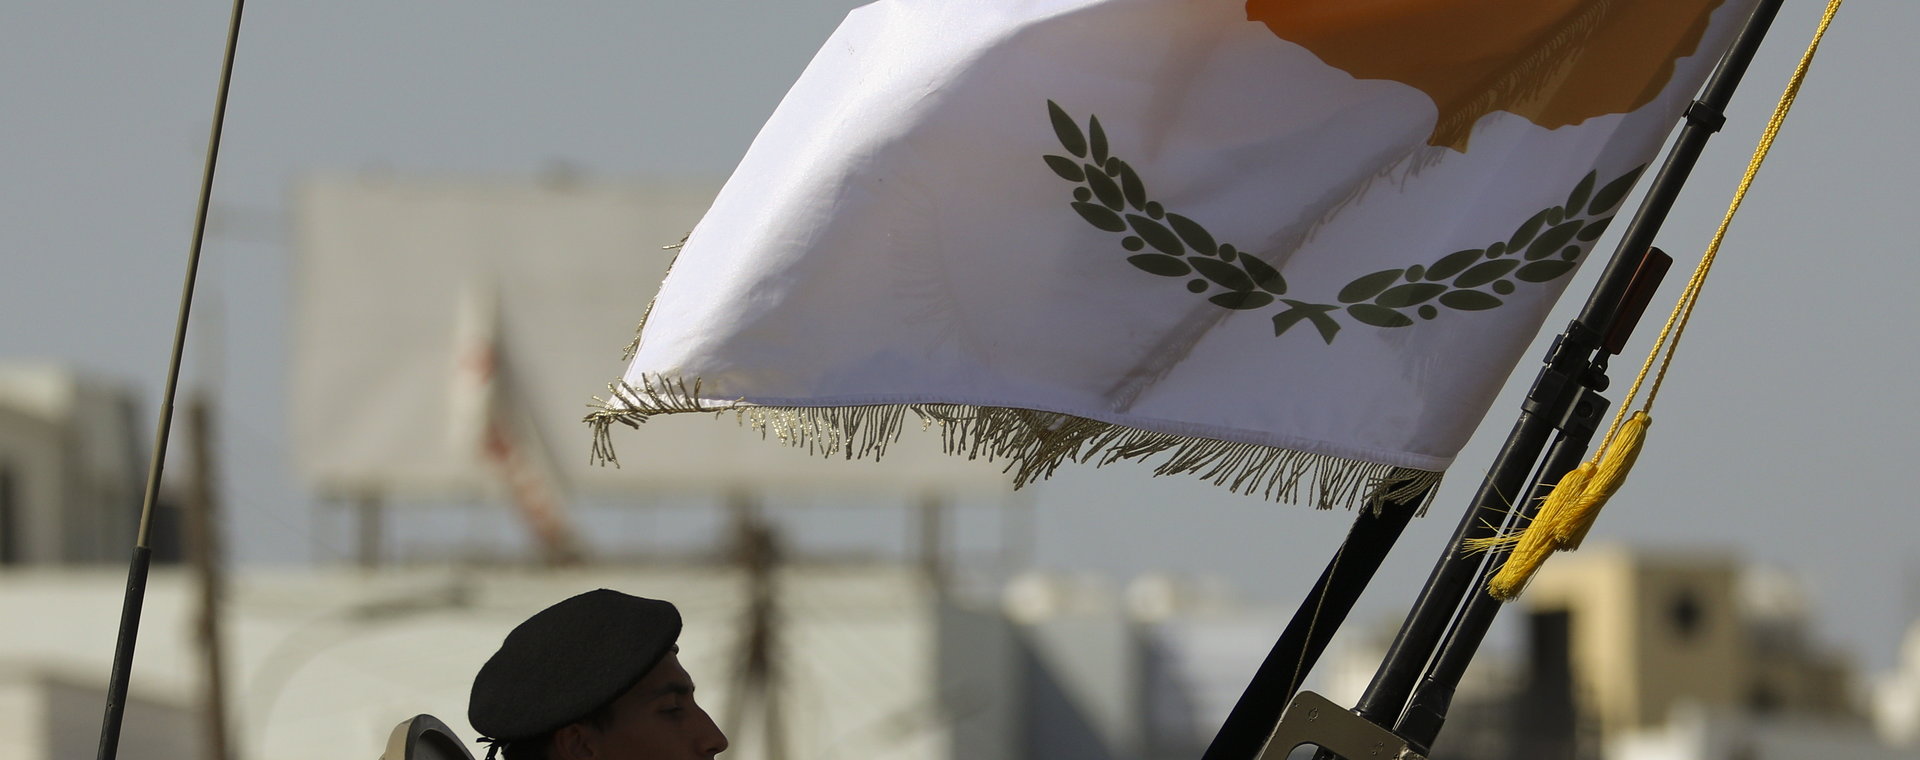 Żołnierz w transporterze opancerzonym, podczas dorocznej parady wojskowej z okazji Dnia Niepodległości Cypru.